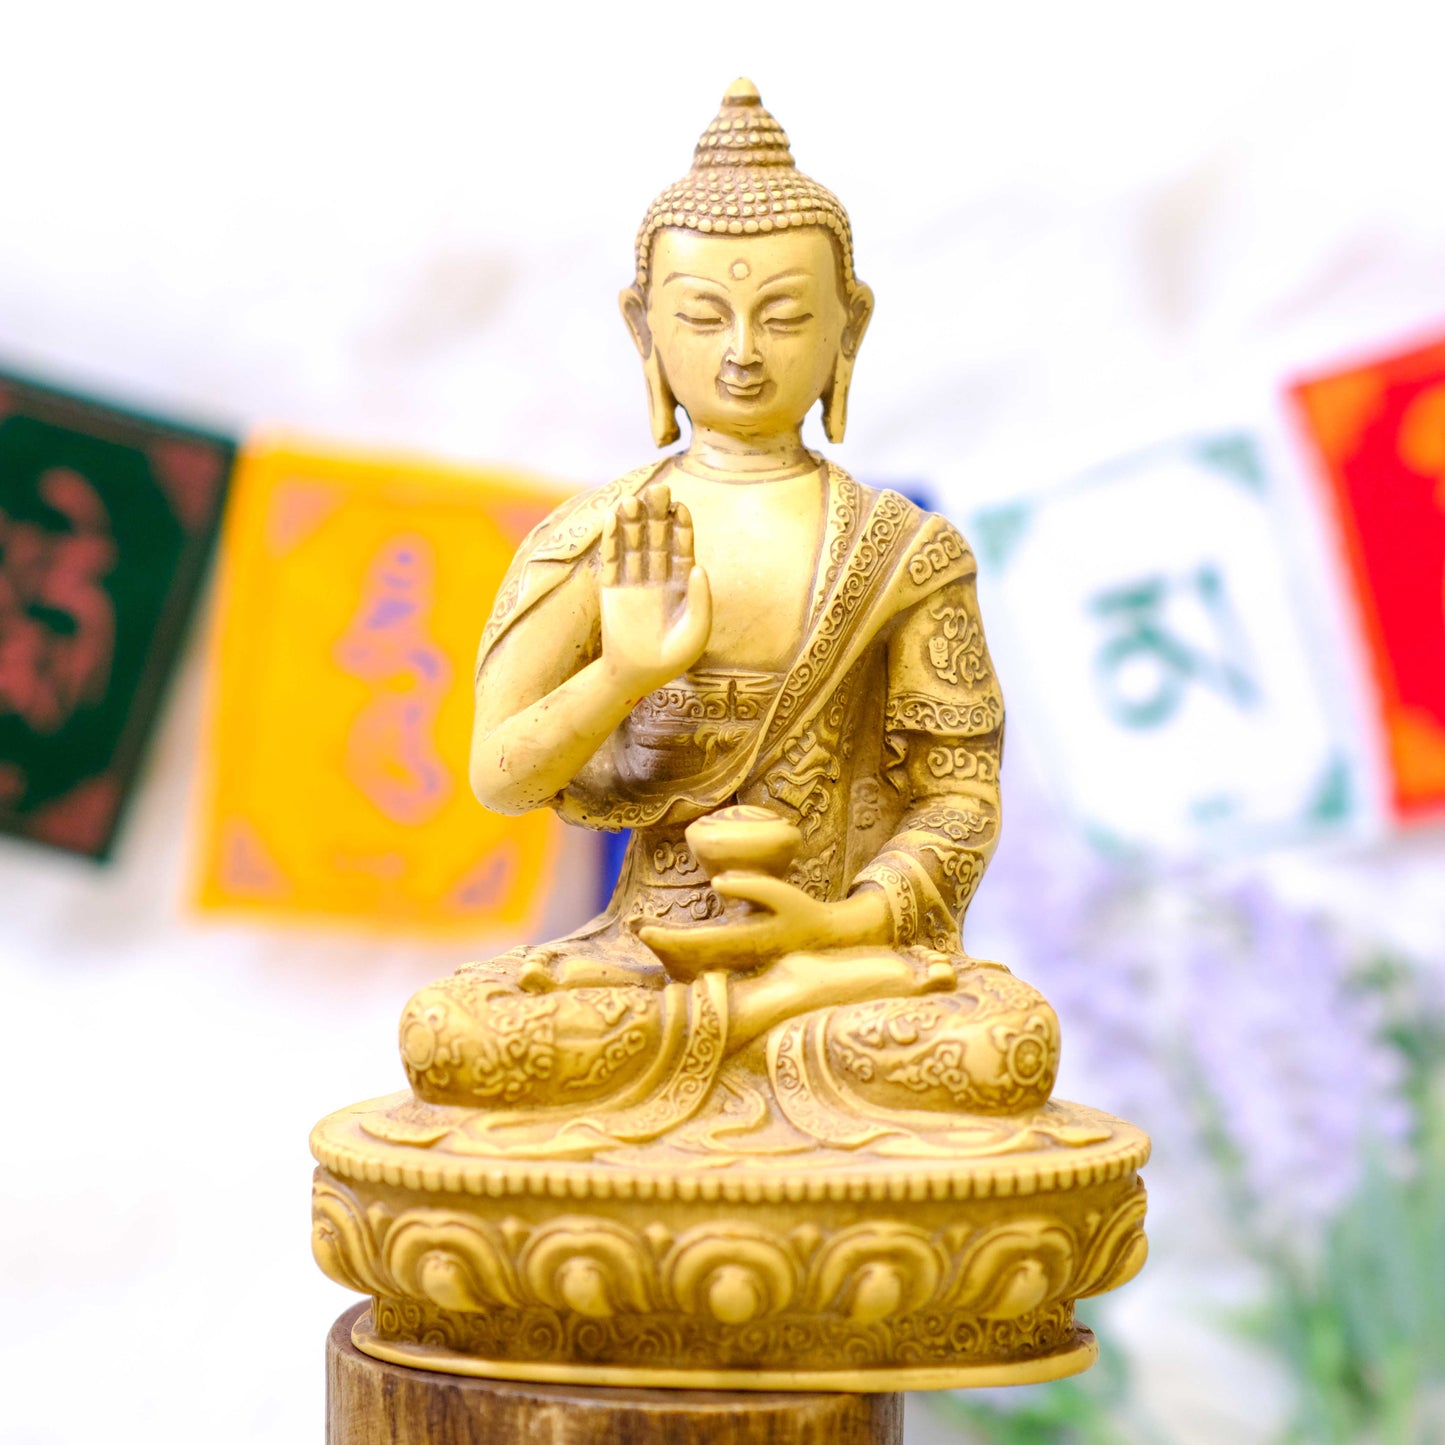 7" Handmade Blessing Buddha Statue